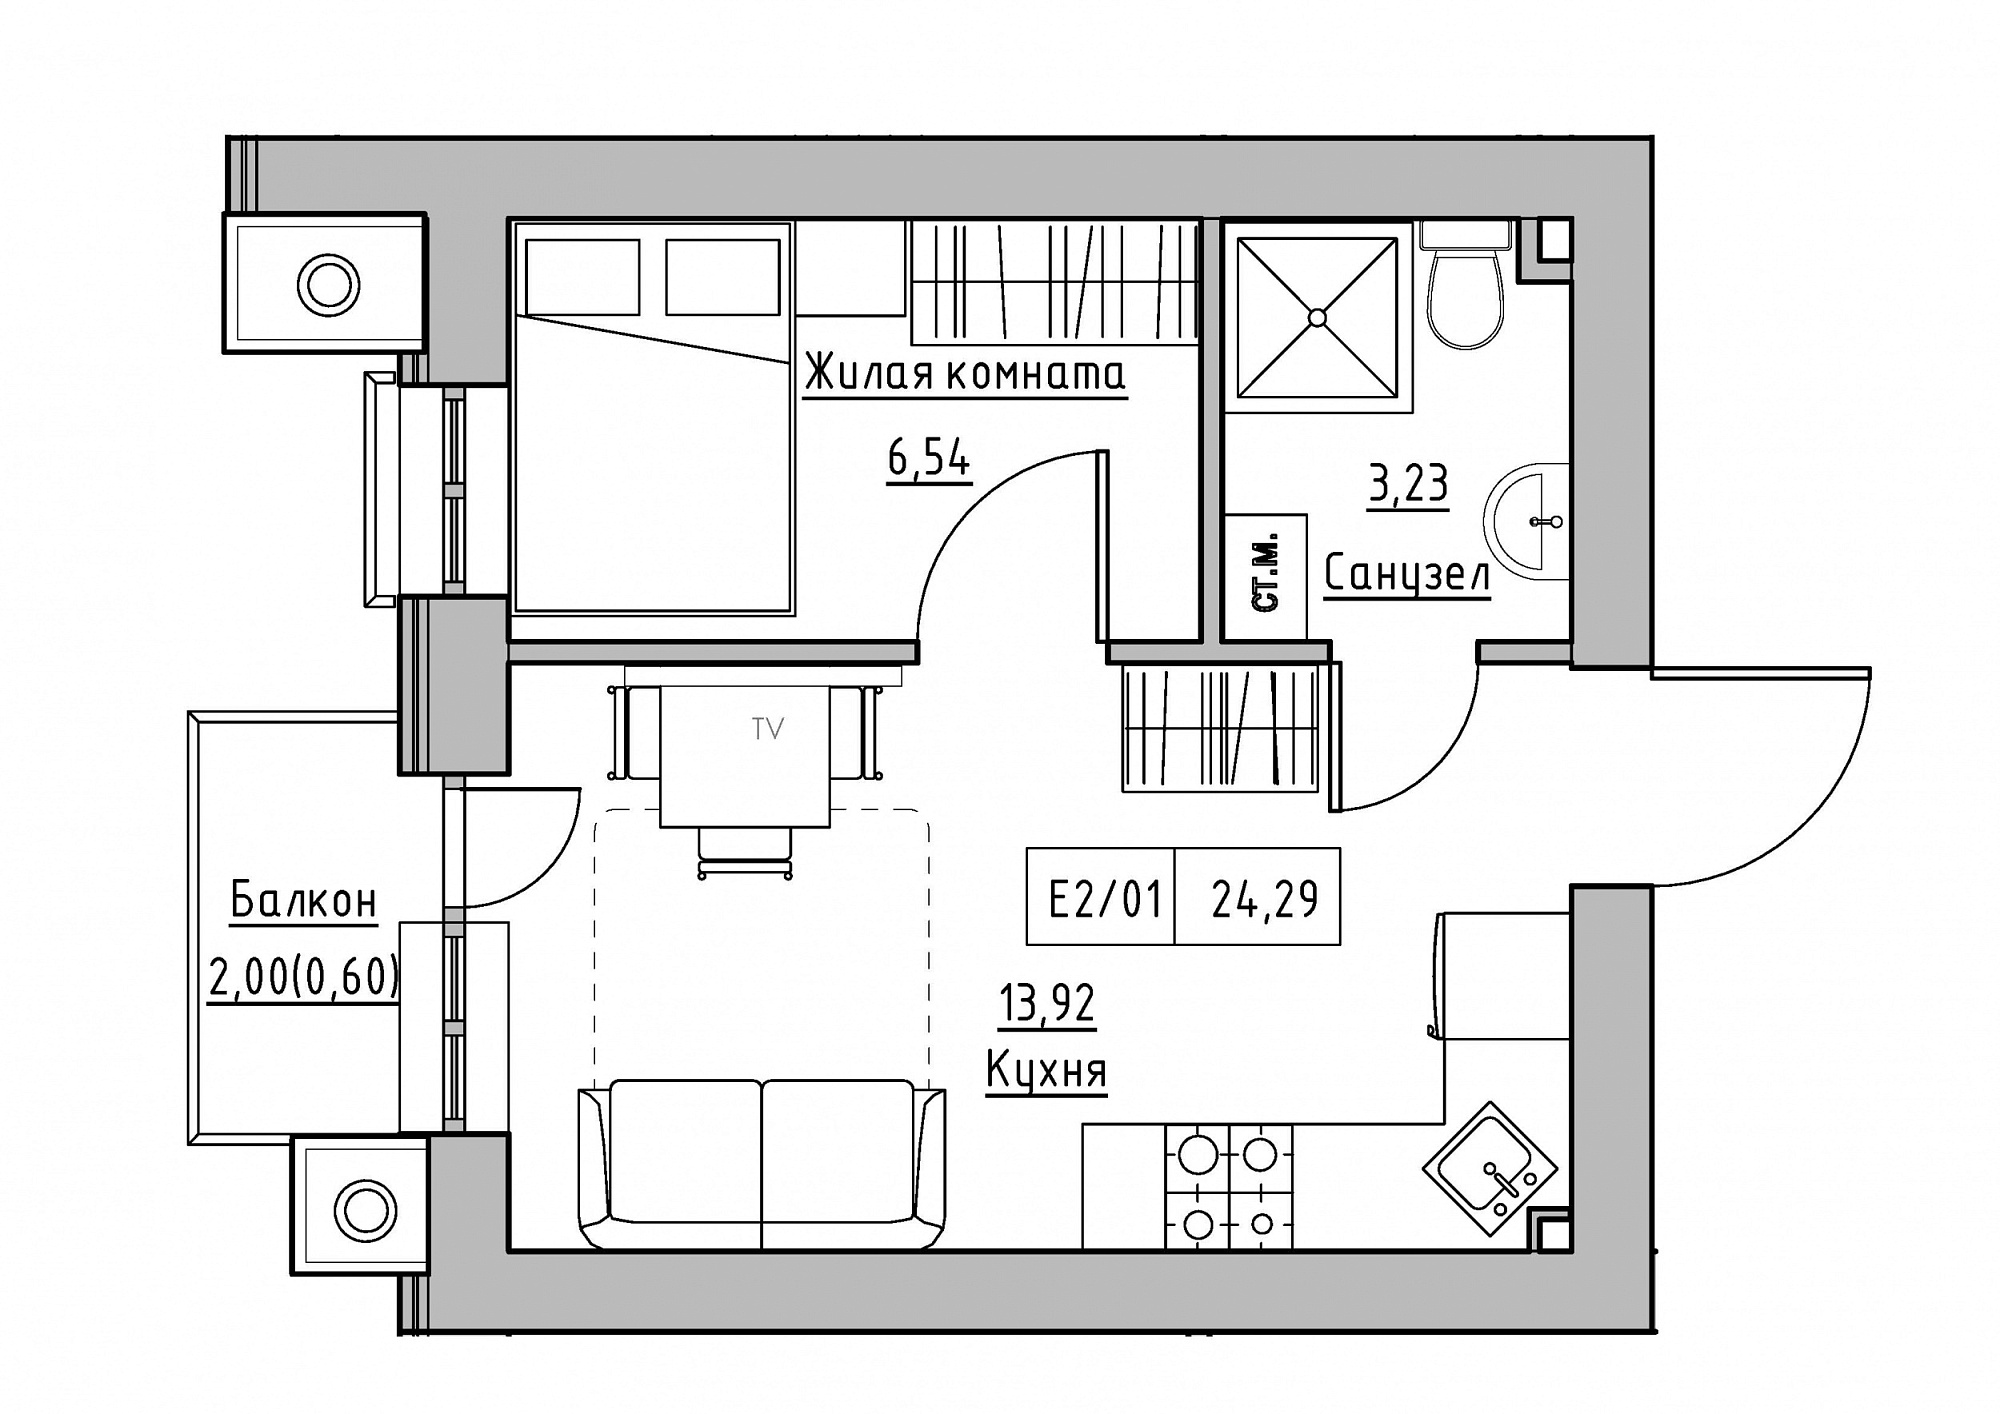 Планування 1-к квартира площею 24.29м2, KS-012-04/0009.